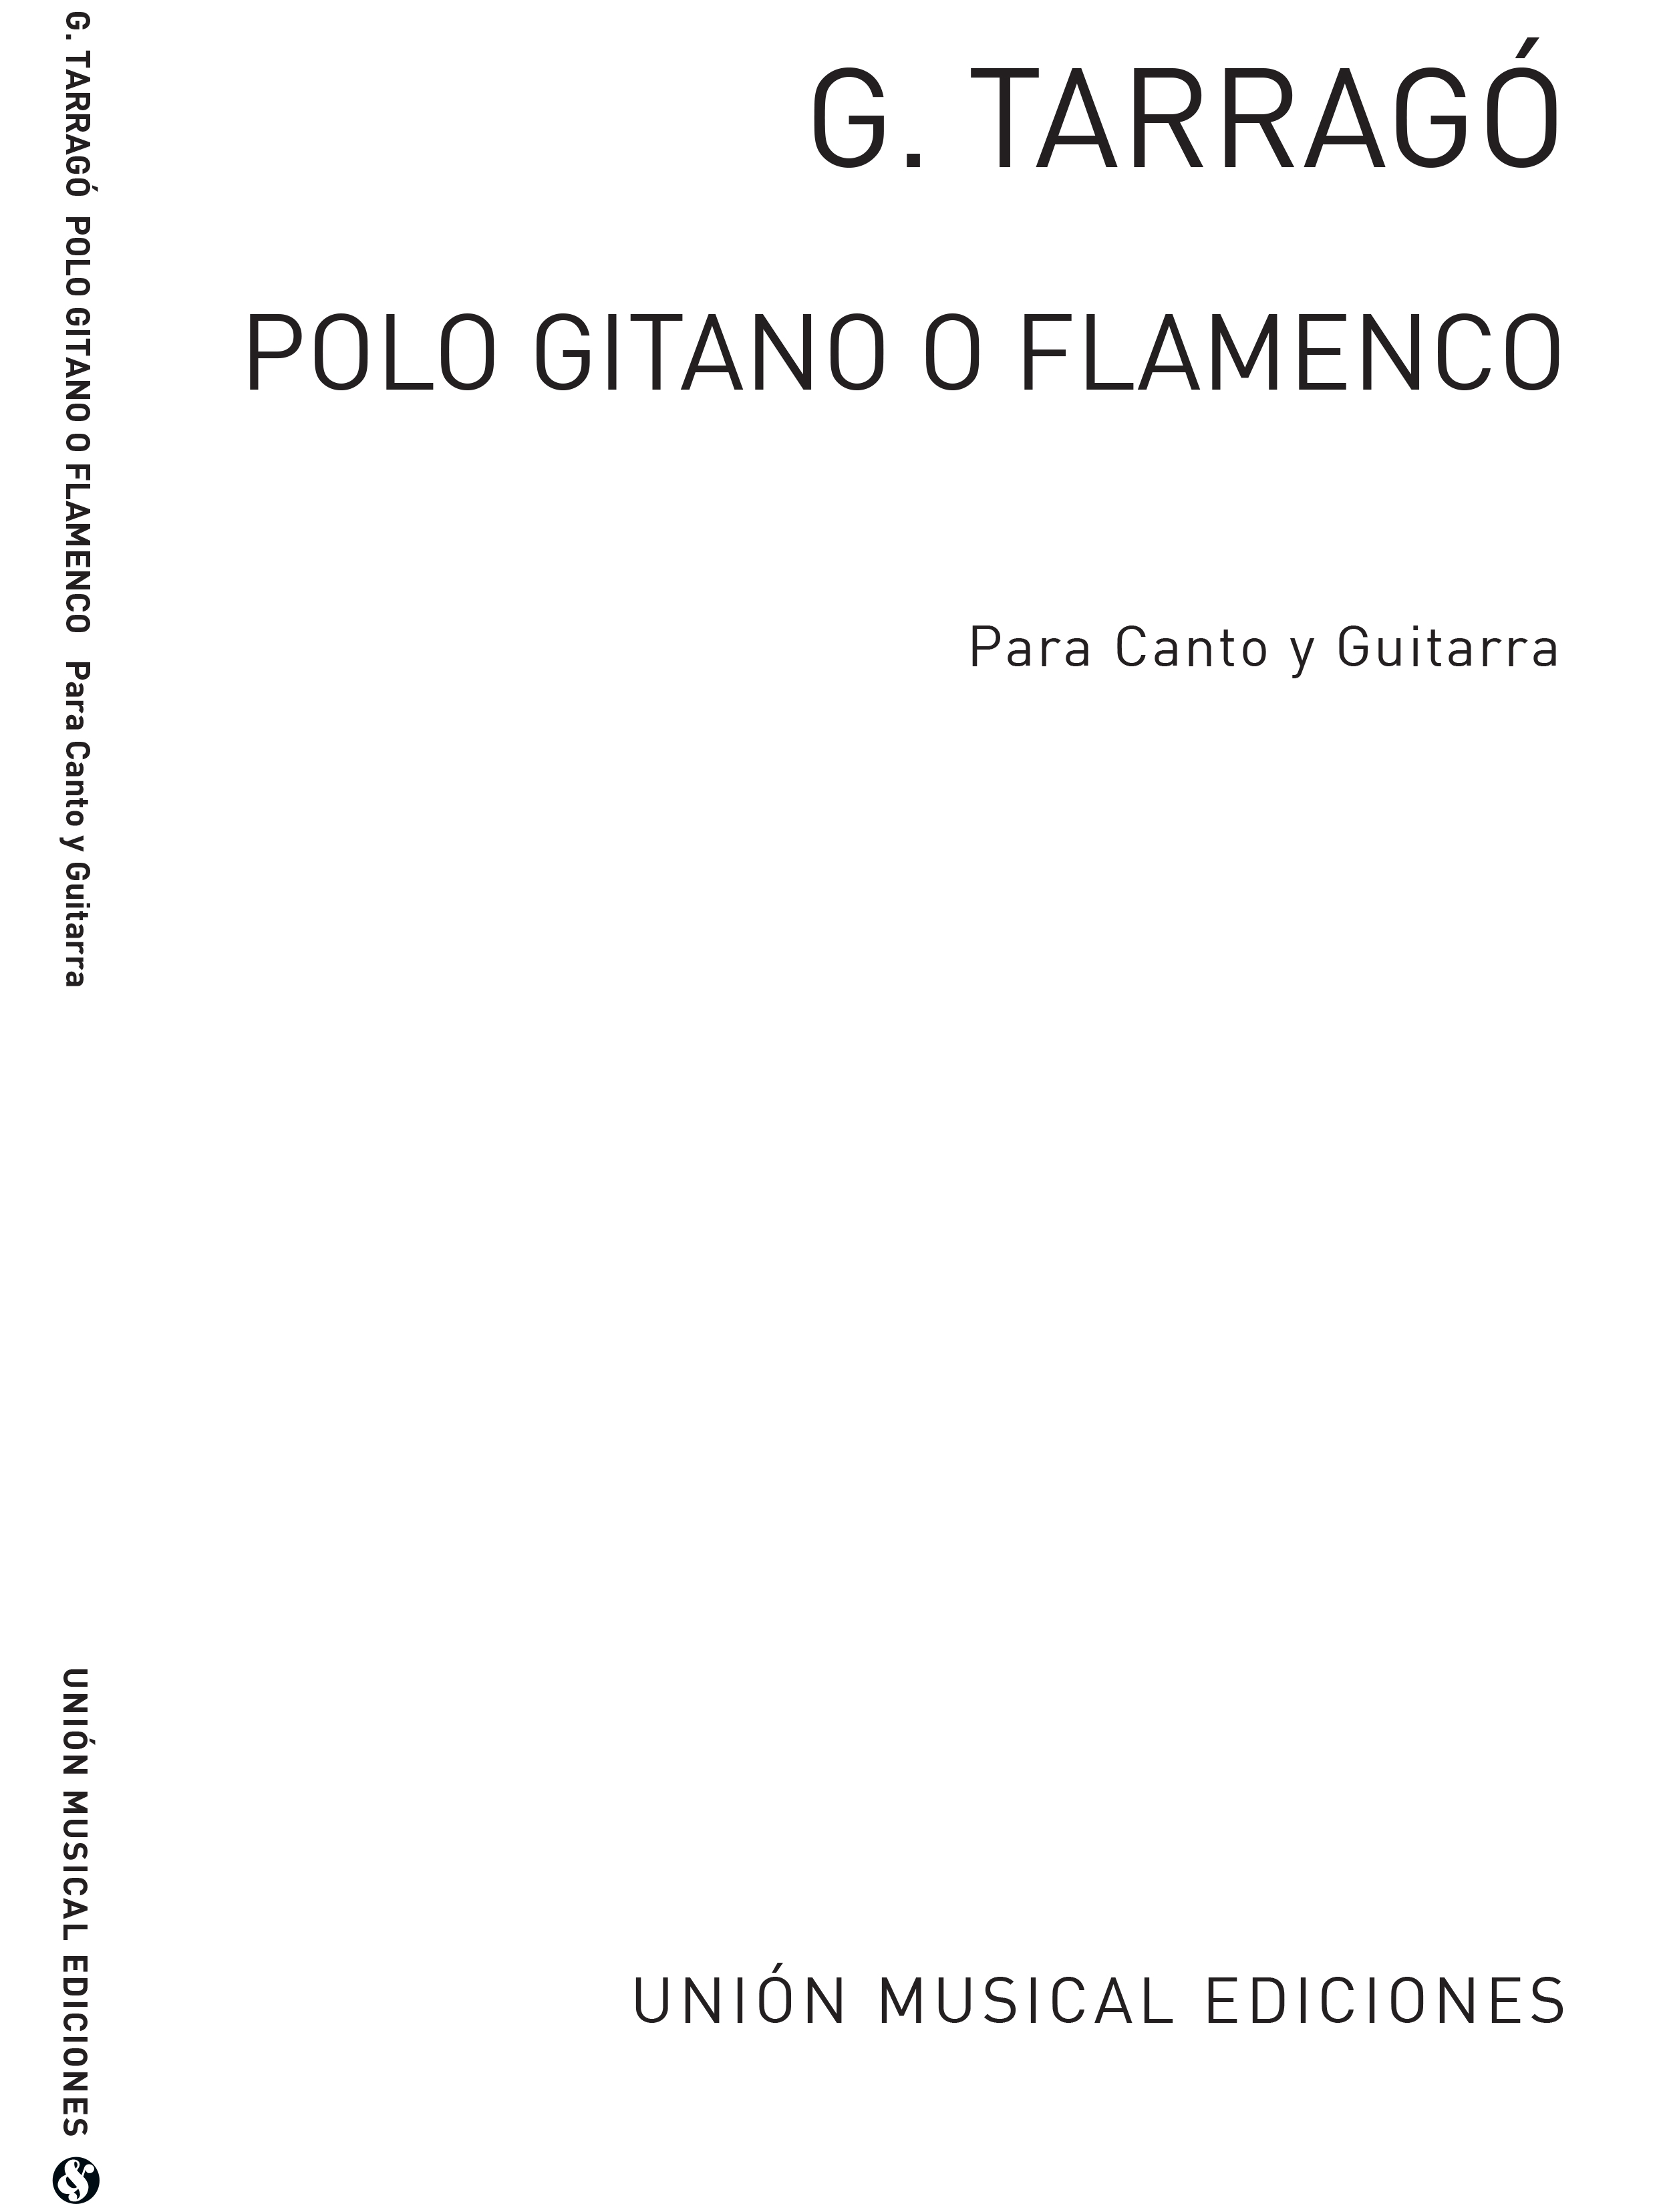 Graciano Tarrag: Polo Gitano O Flamenco: Voice: Instrumental Work